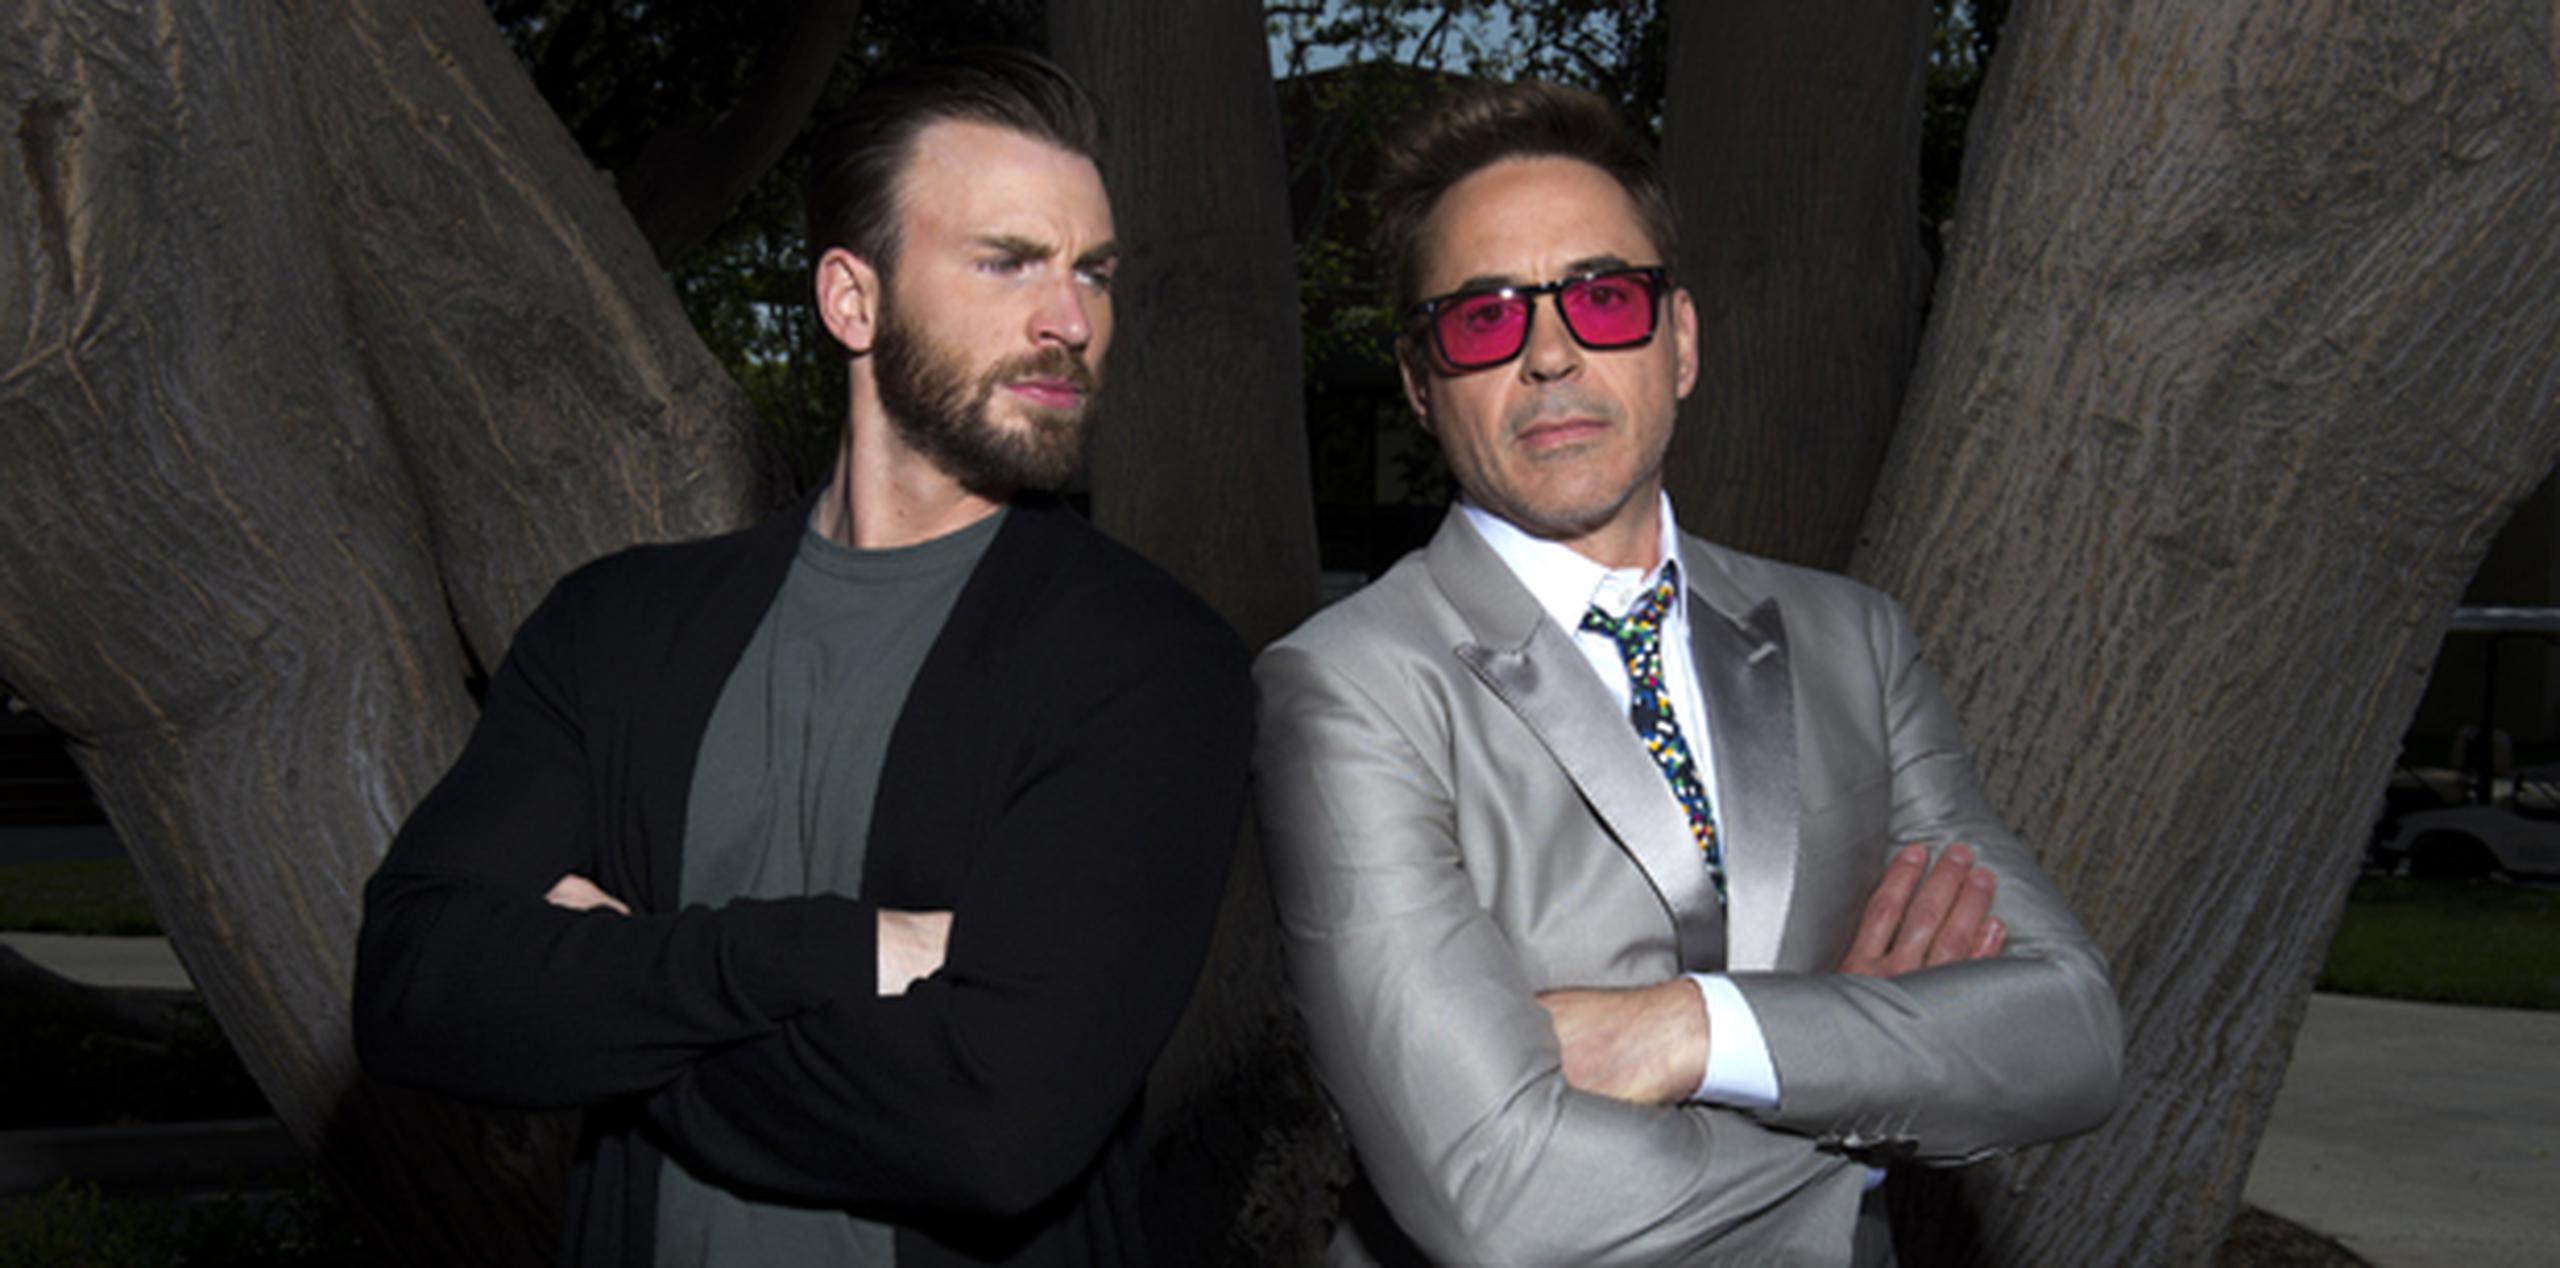 Después de tres filmes de Iron Man y dos de los Vengadores, el polifacético Downey Jr asegura que cada vez que se pone el traje del superhéroe de Marvel "es diferente". (AP)